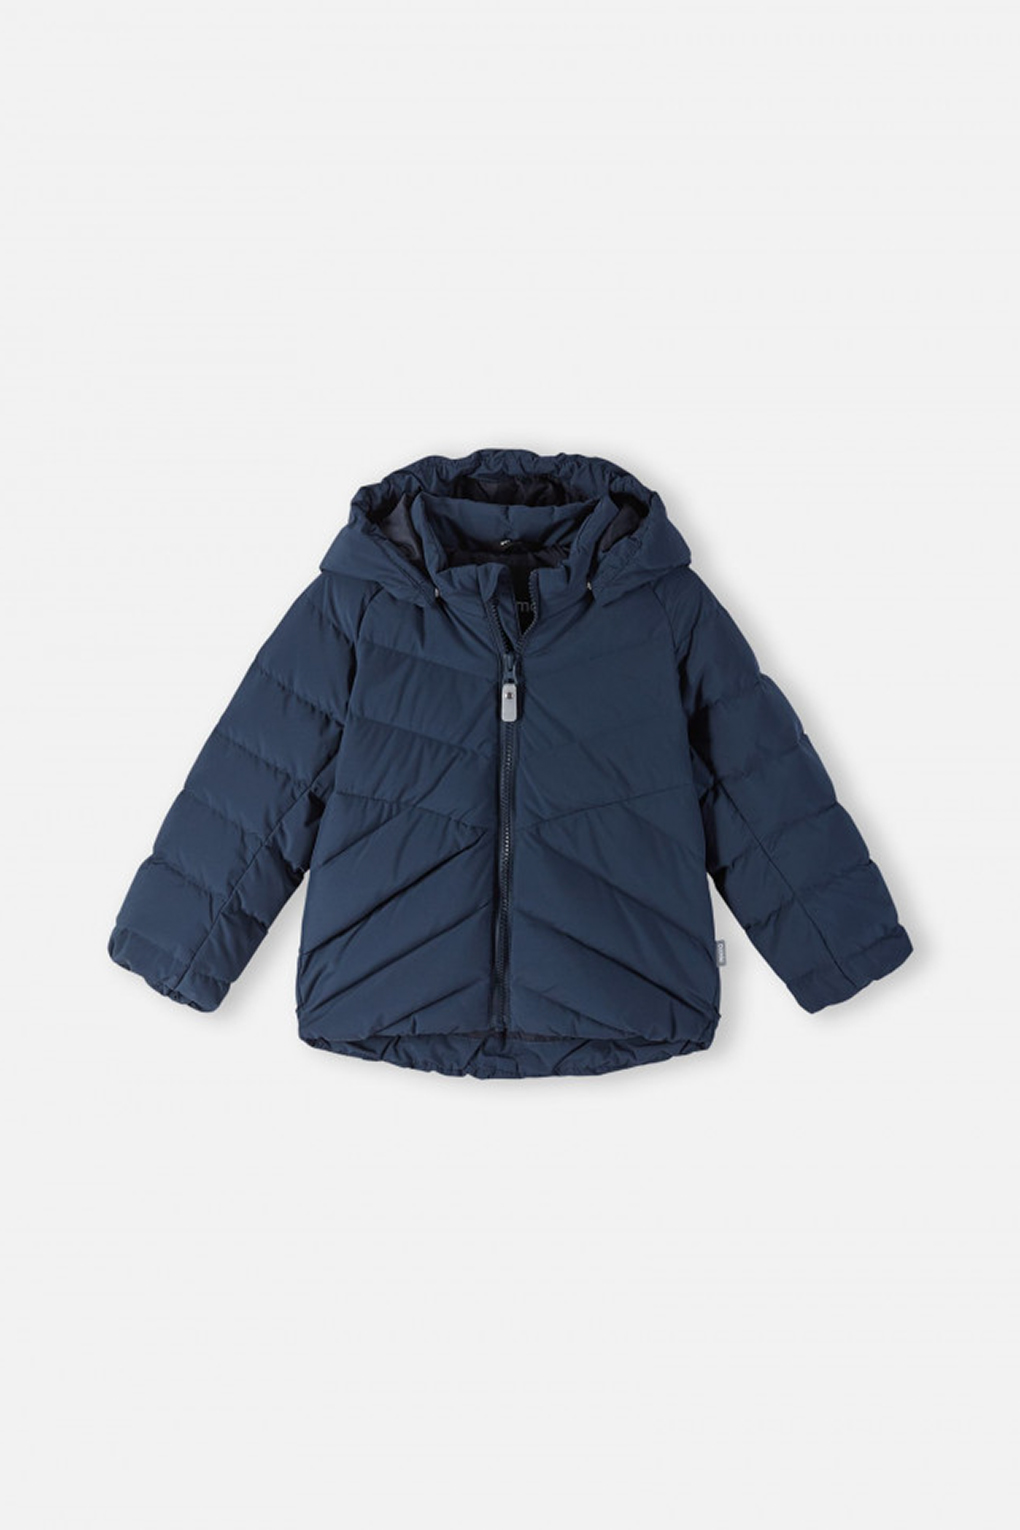 Куртка детская Reima 5100034A синий, 92